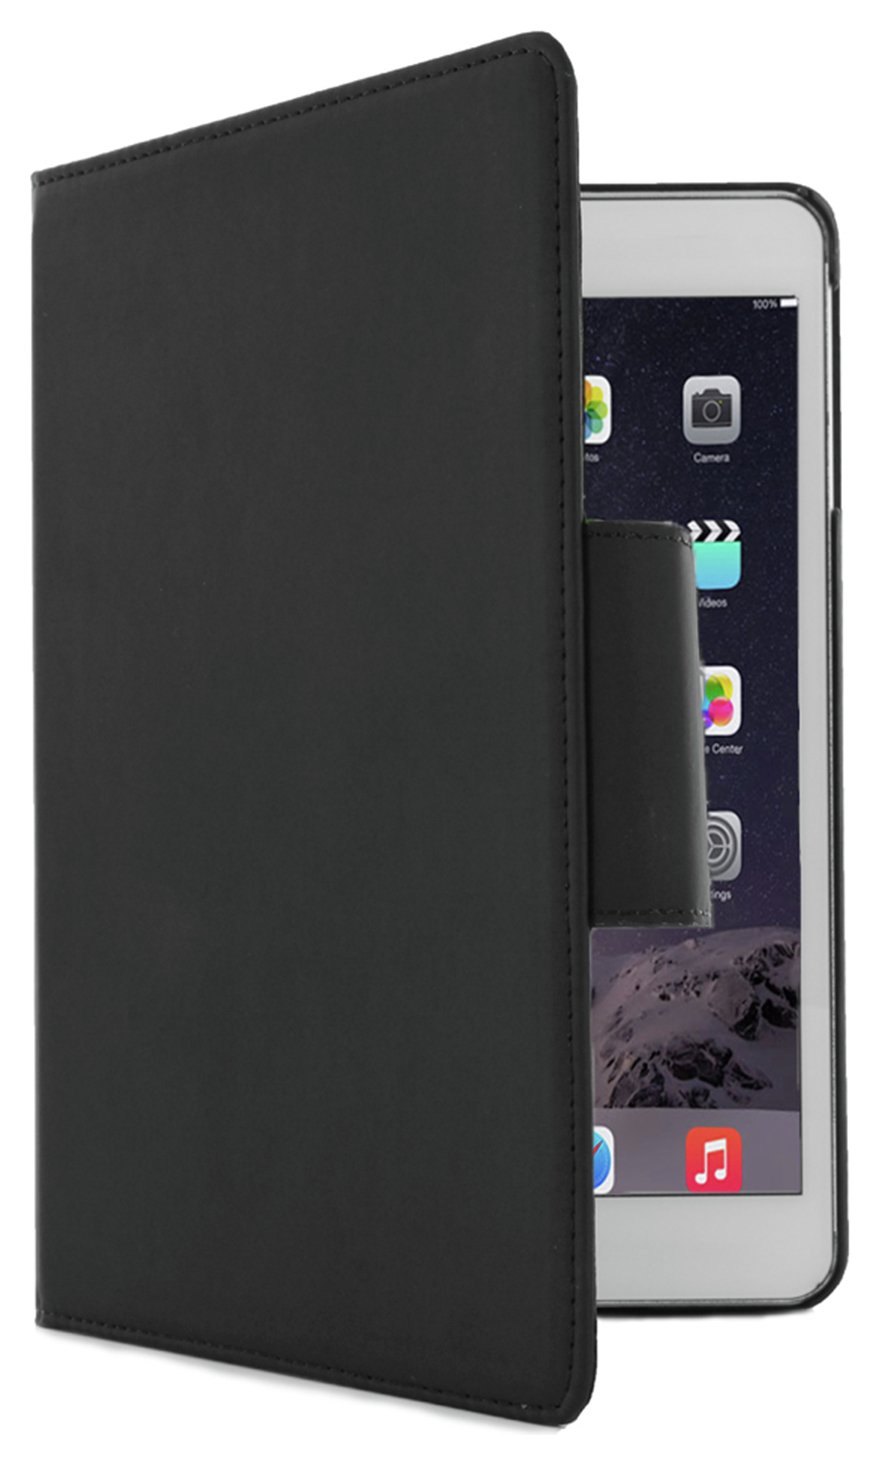 iPad Mini 4 / iPad mini (2019) Folio Case Review